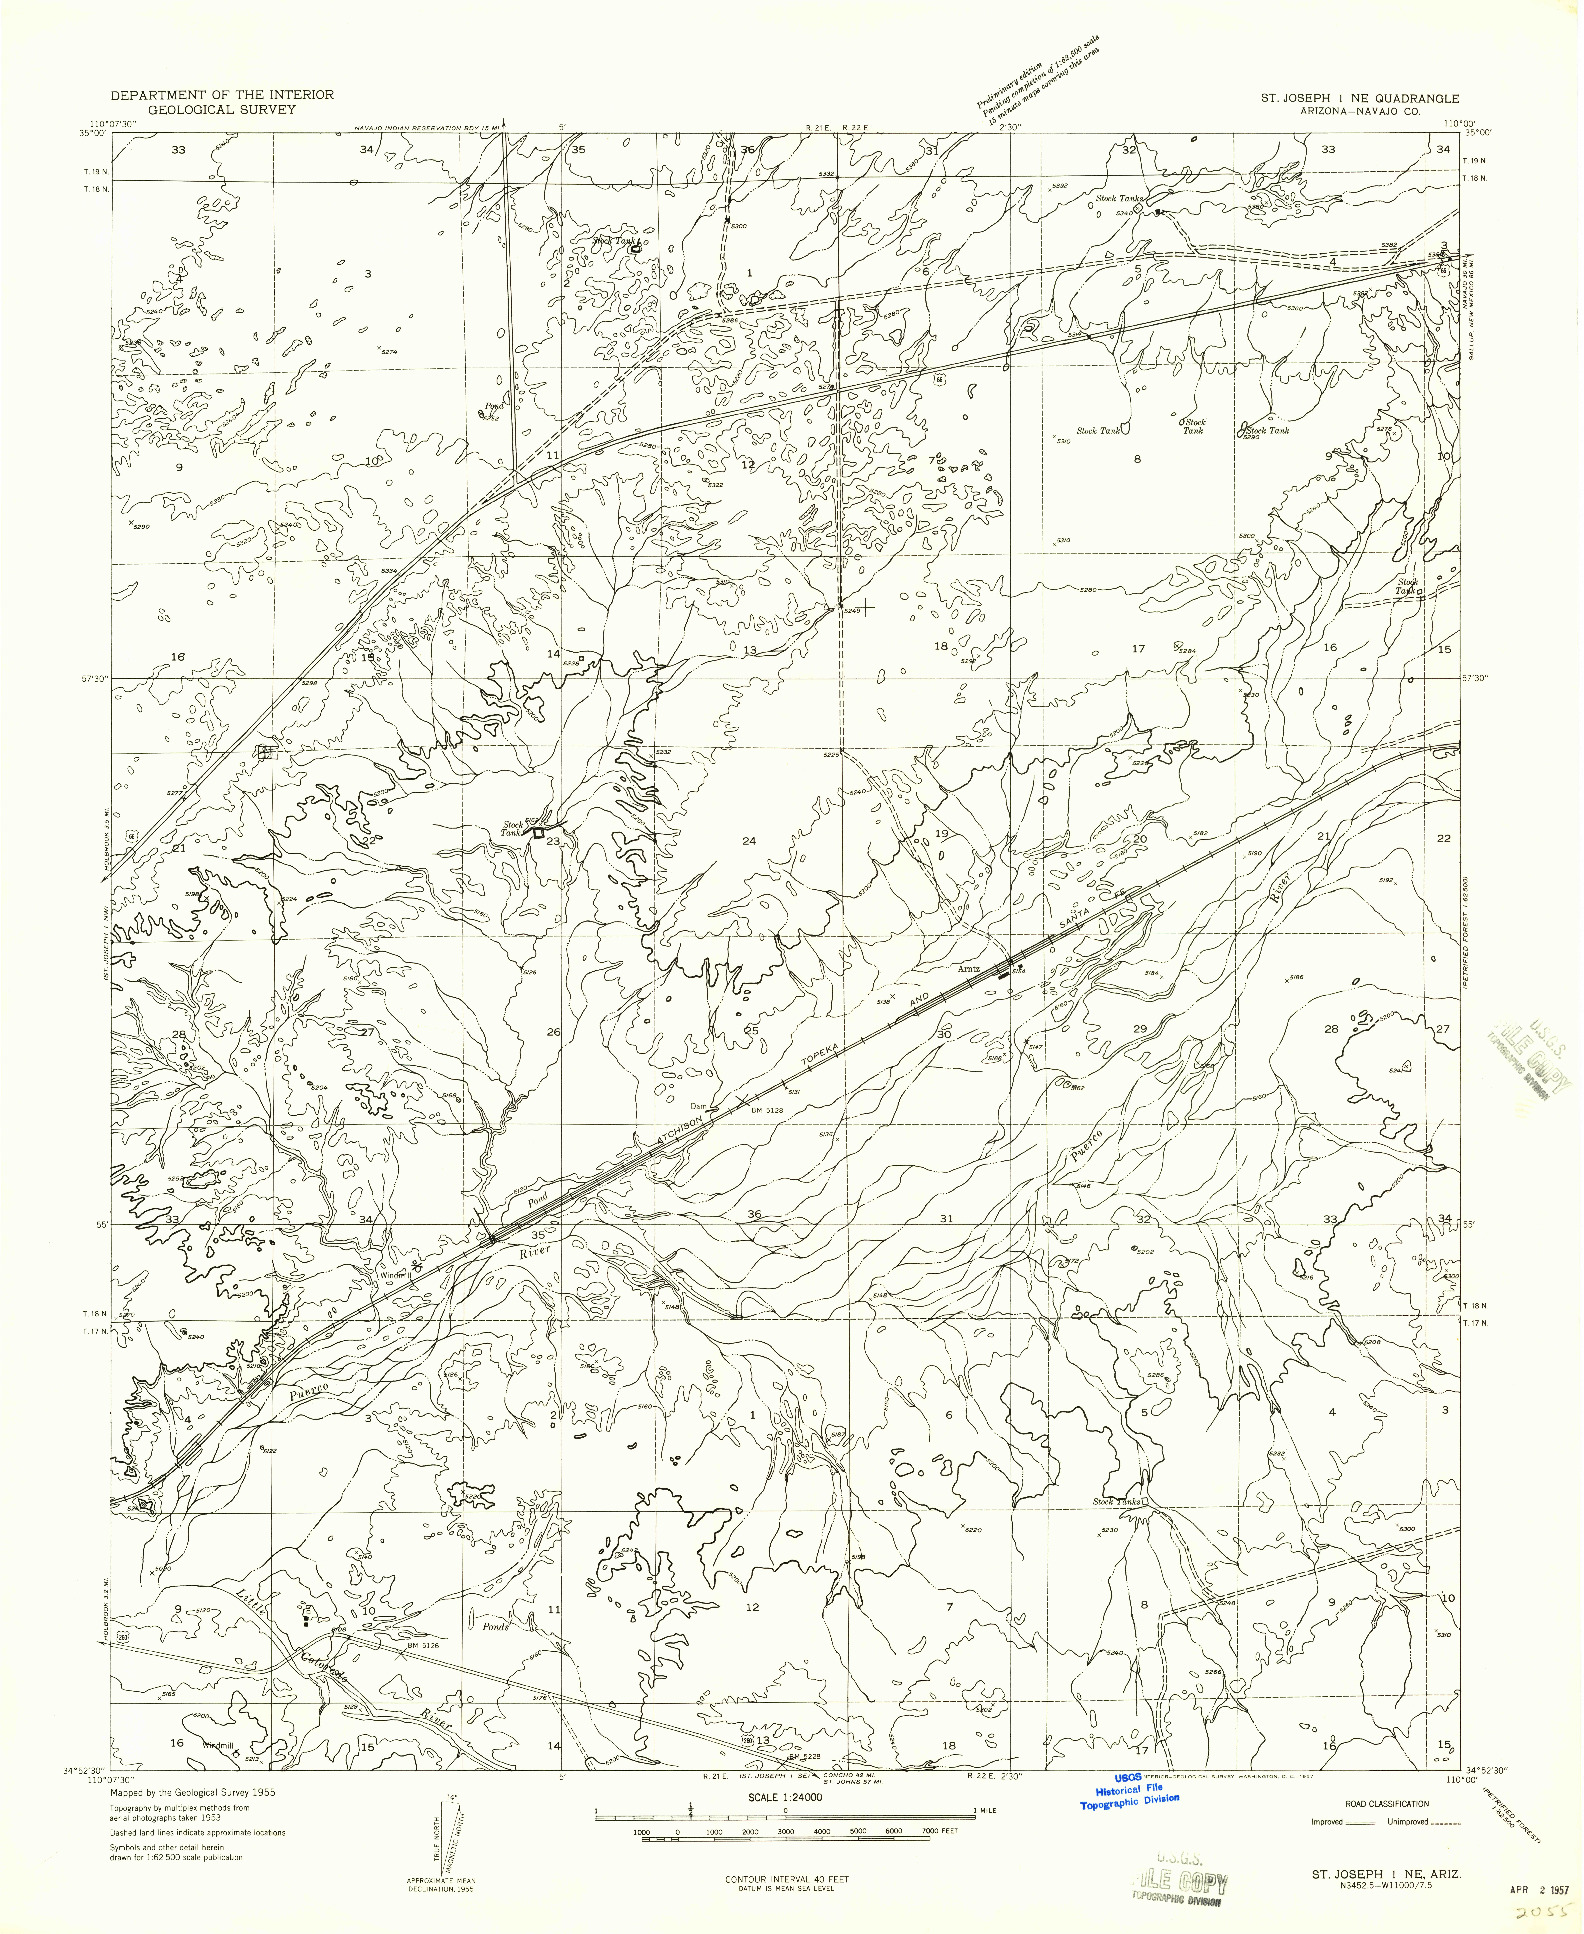 USGS 1:24000-SCALE QUADRANGLE FOR ST. JOSEPH 1 NE, AZ 1955